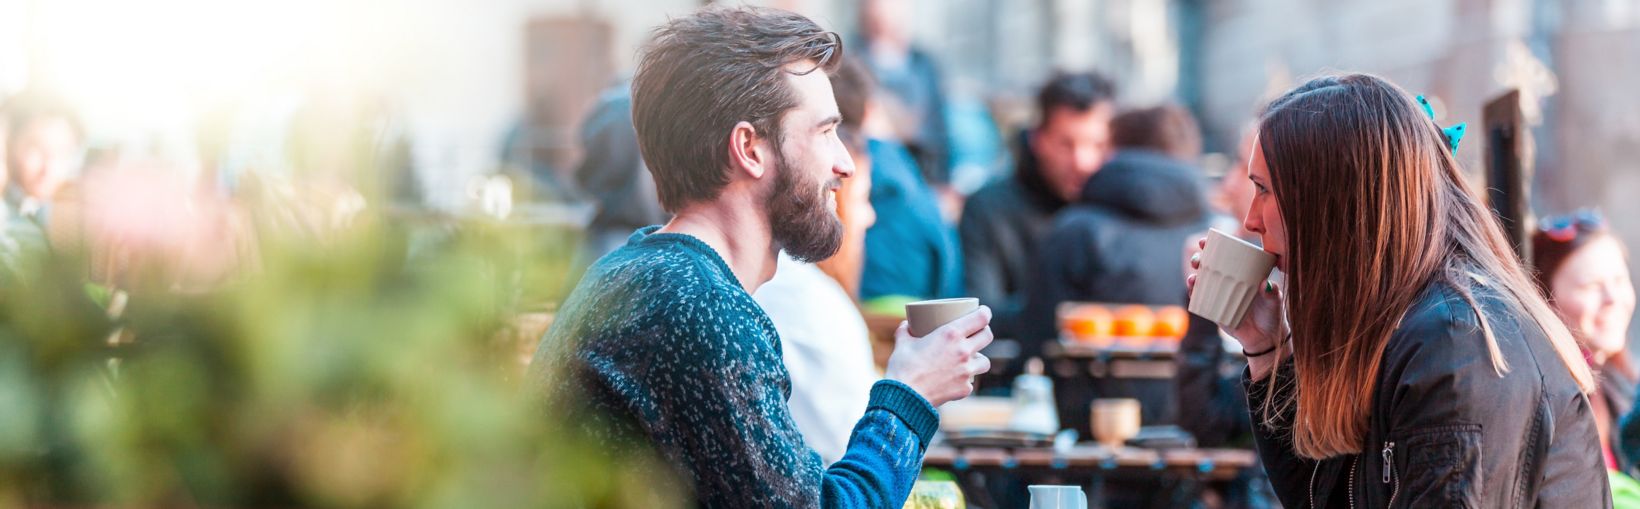 Jonge volwassen vrouw met lang bruin haar en vriend drinken koffie aan een tafeltje buiten een café op een zonnige maar frisse dag